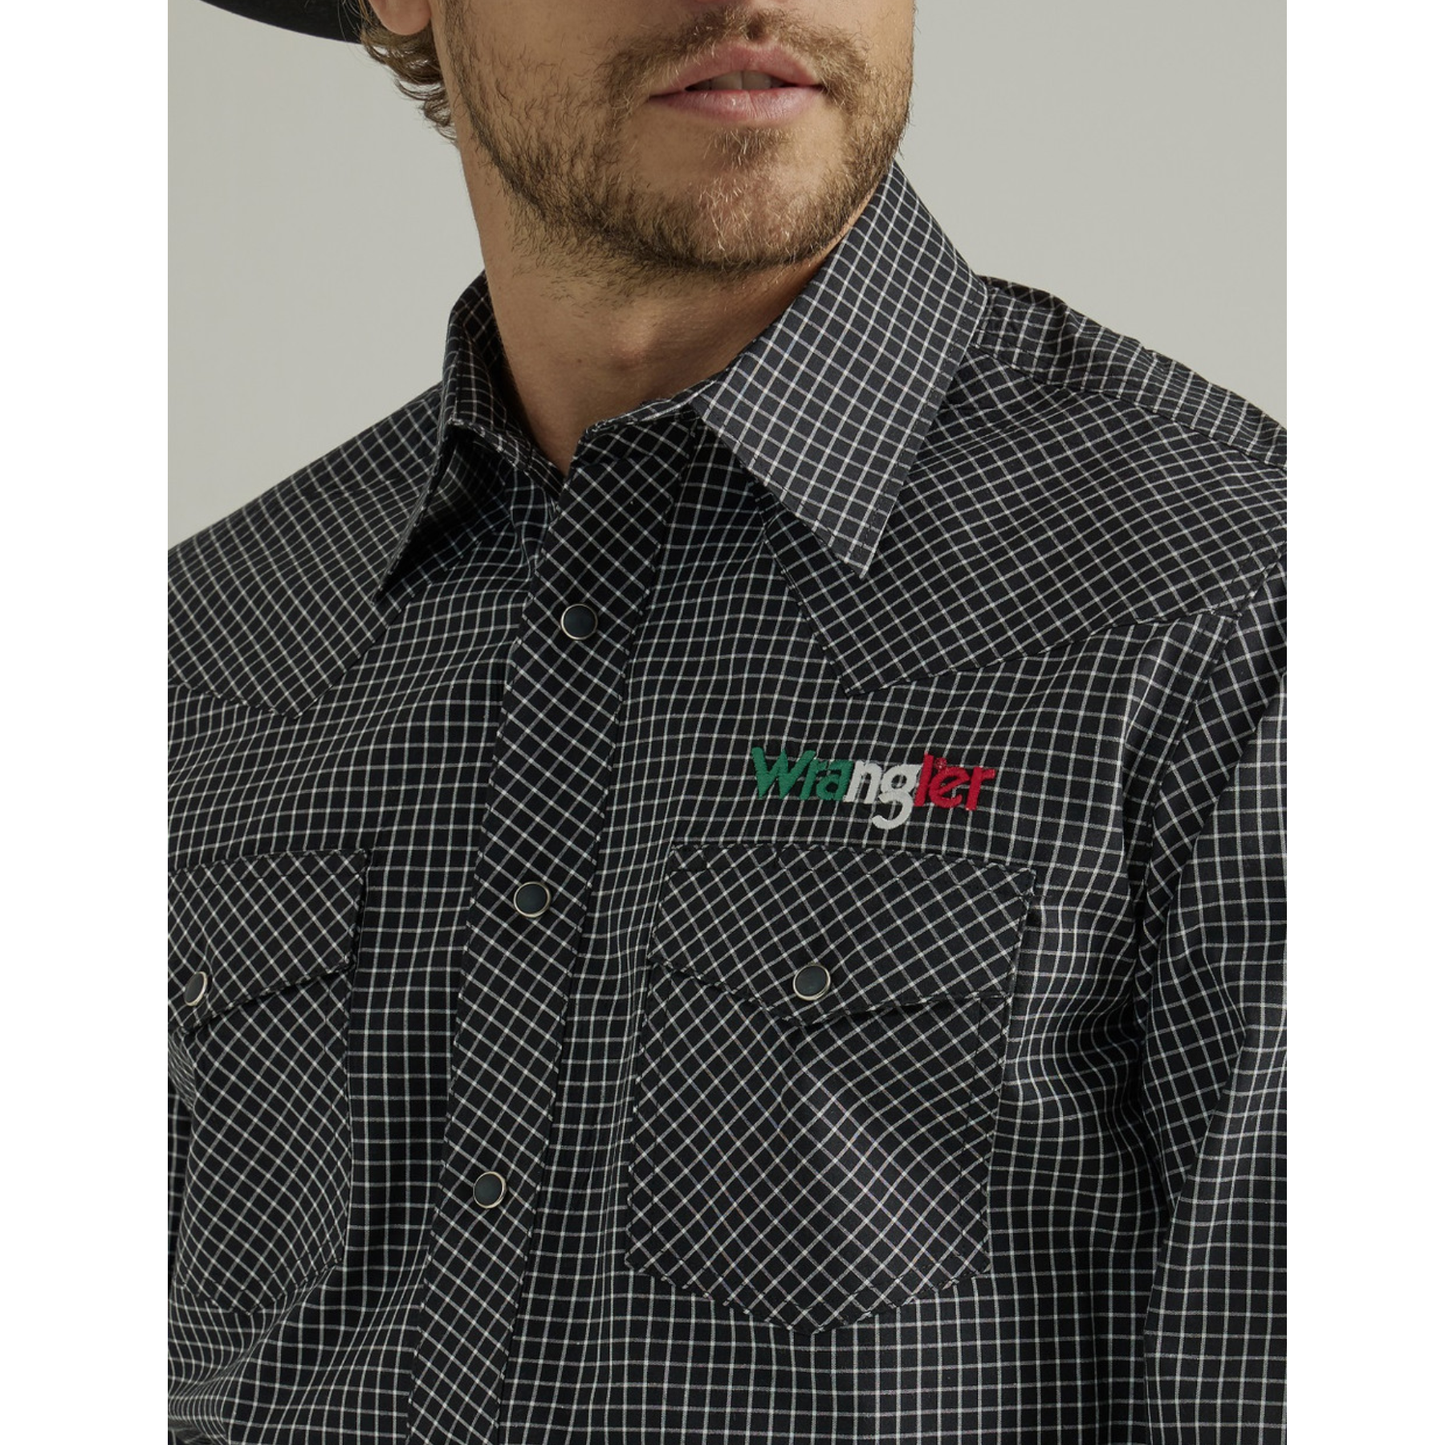 Wrangler Men's Black Checkered Mexico Flag Button Down Shirt 2330376